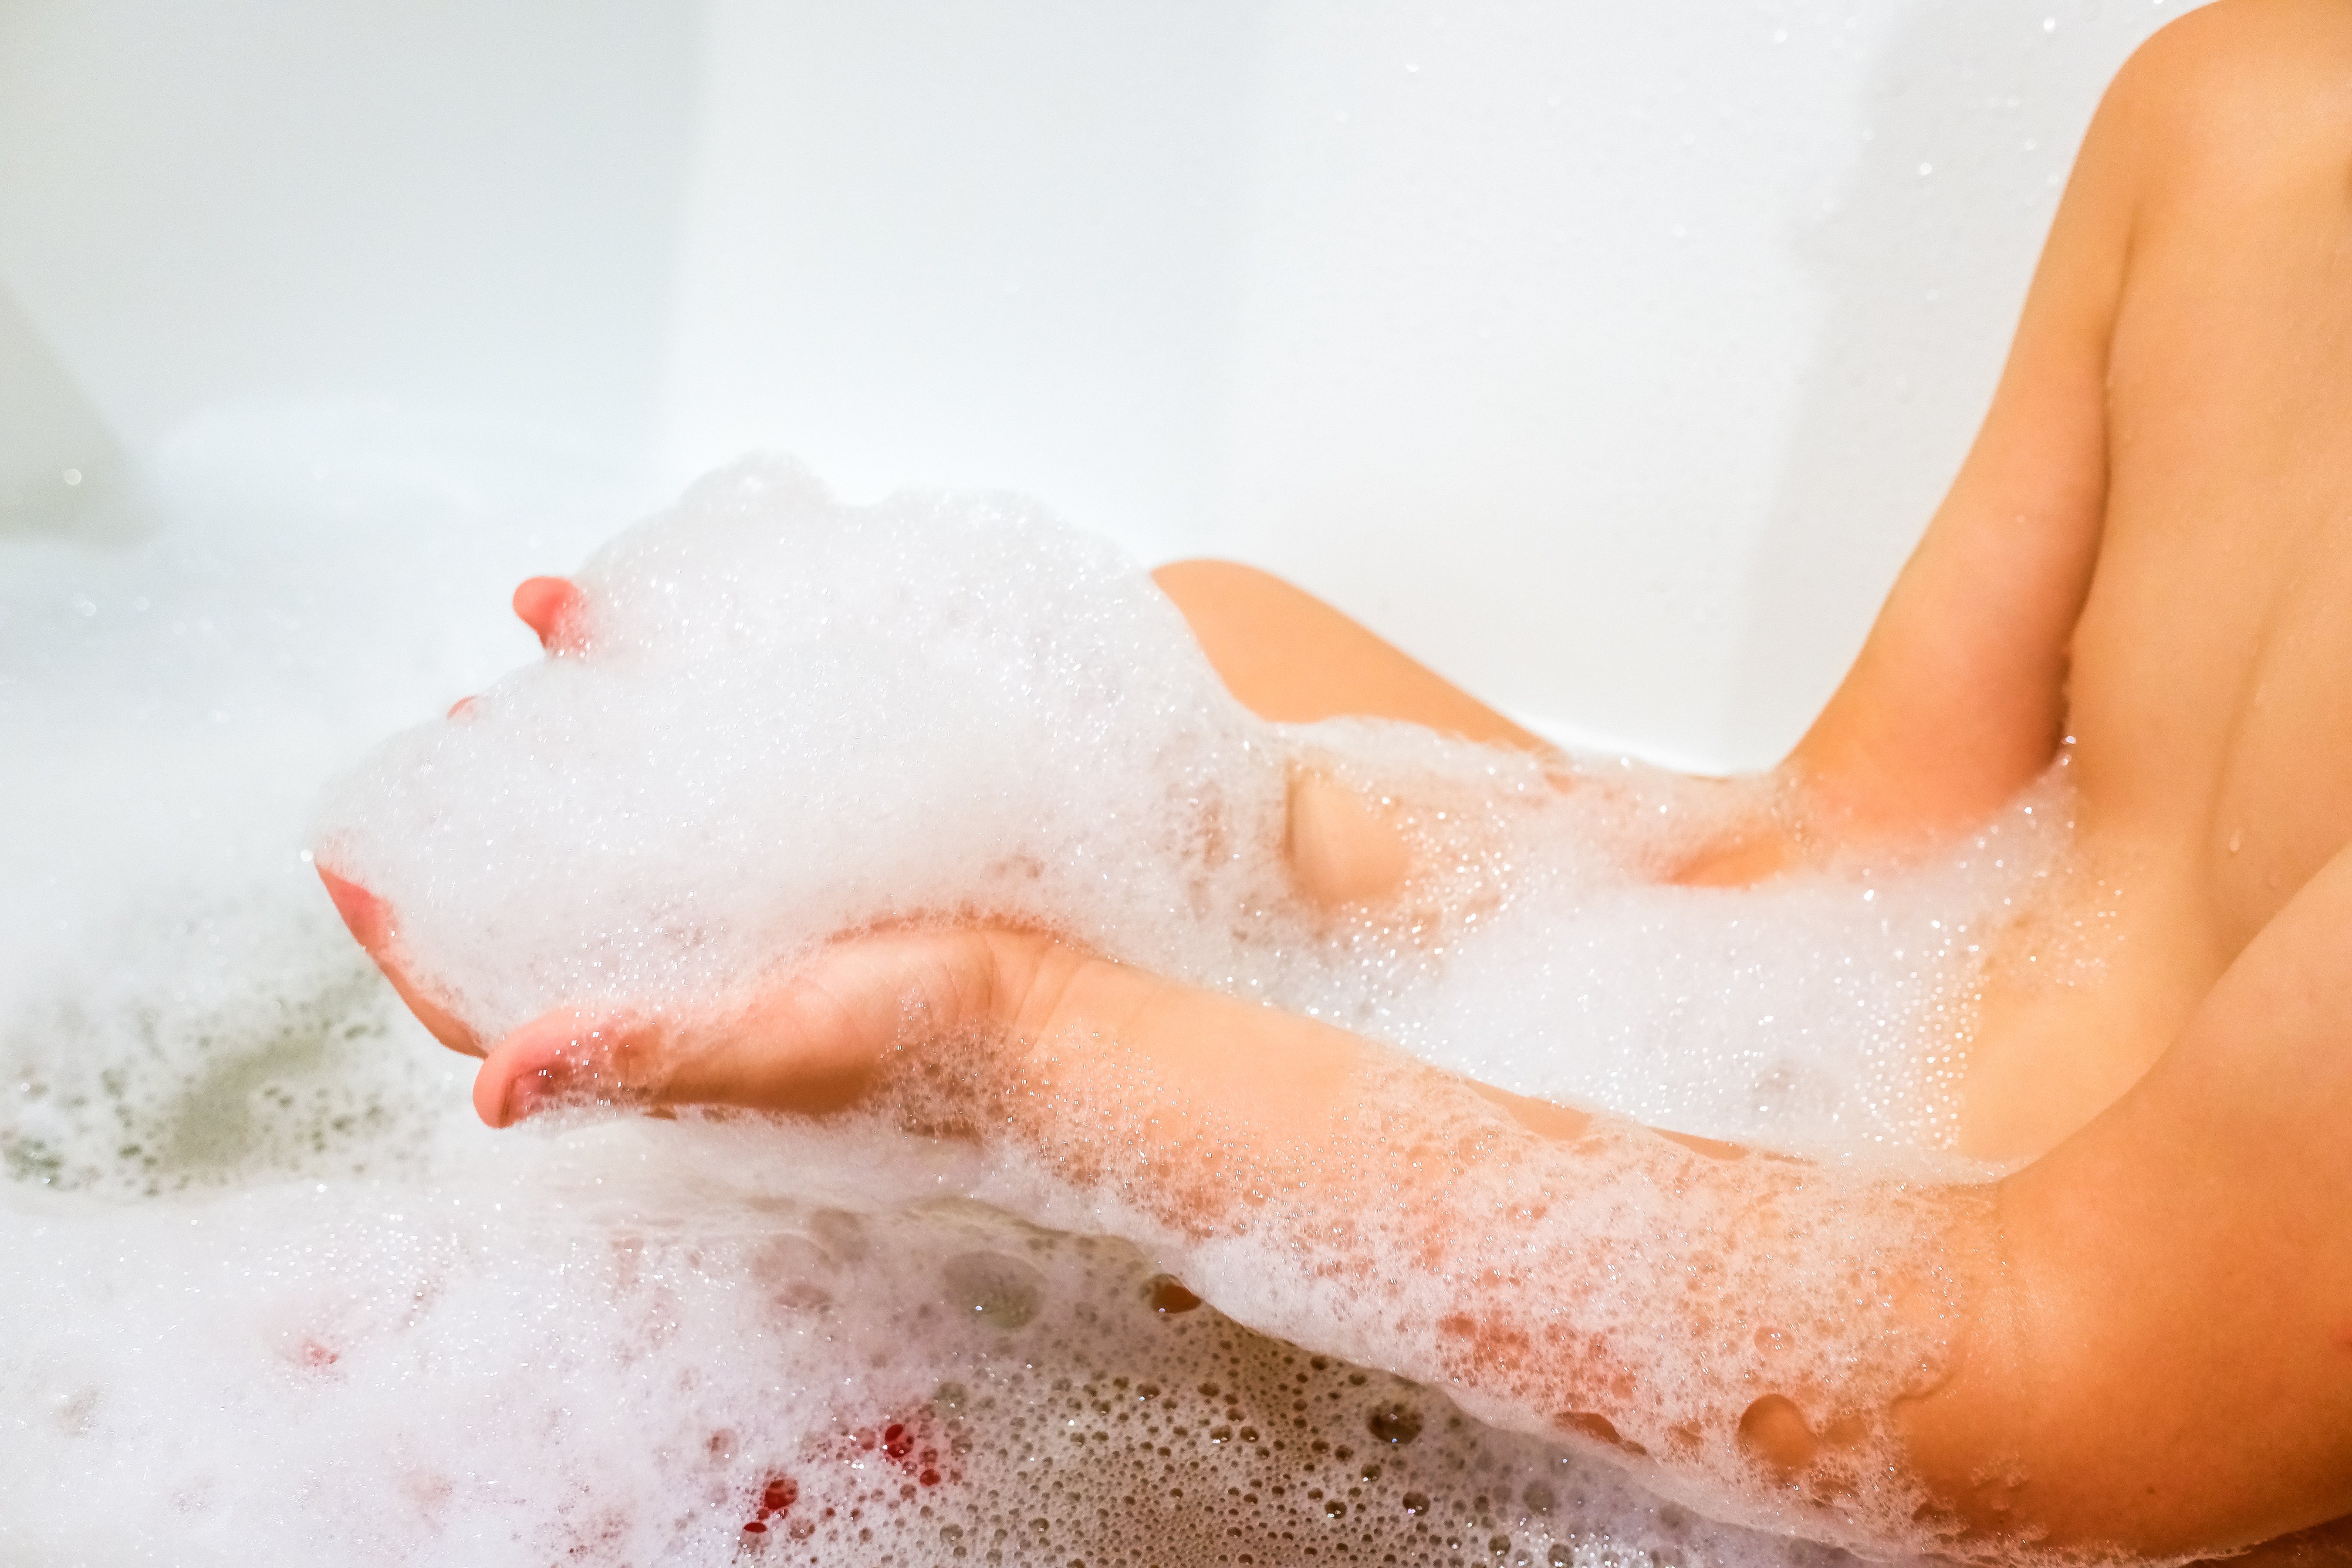 對於身體機能退化甚至失能臥床的長者而言，洗澡是一種奢侈的享受。圖/123RF